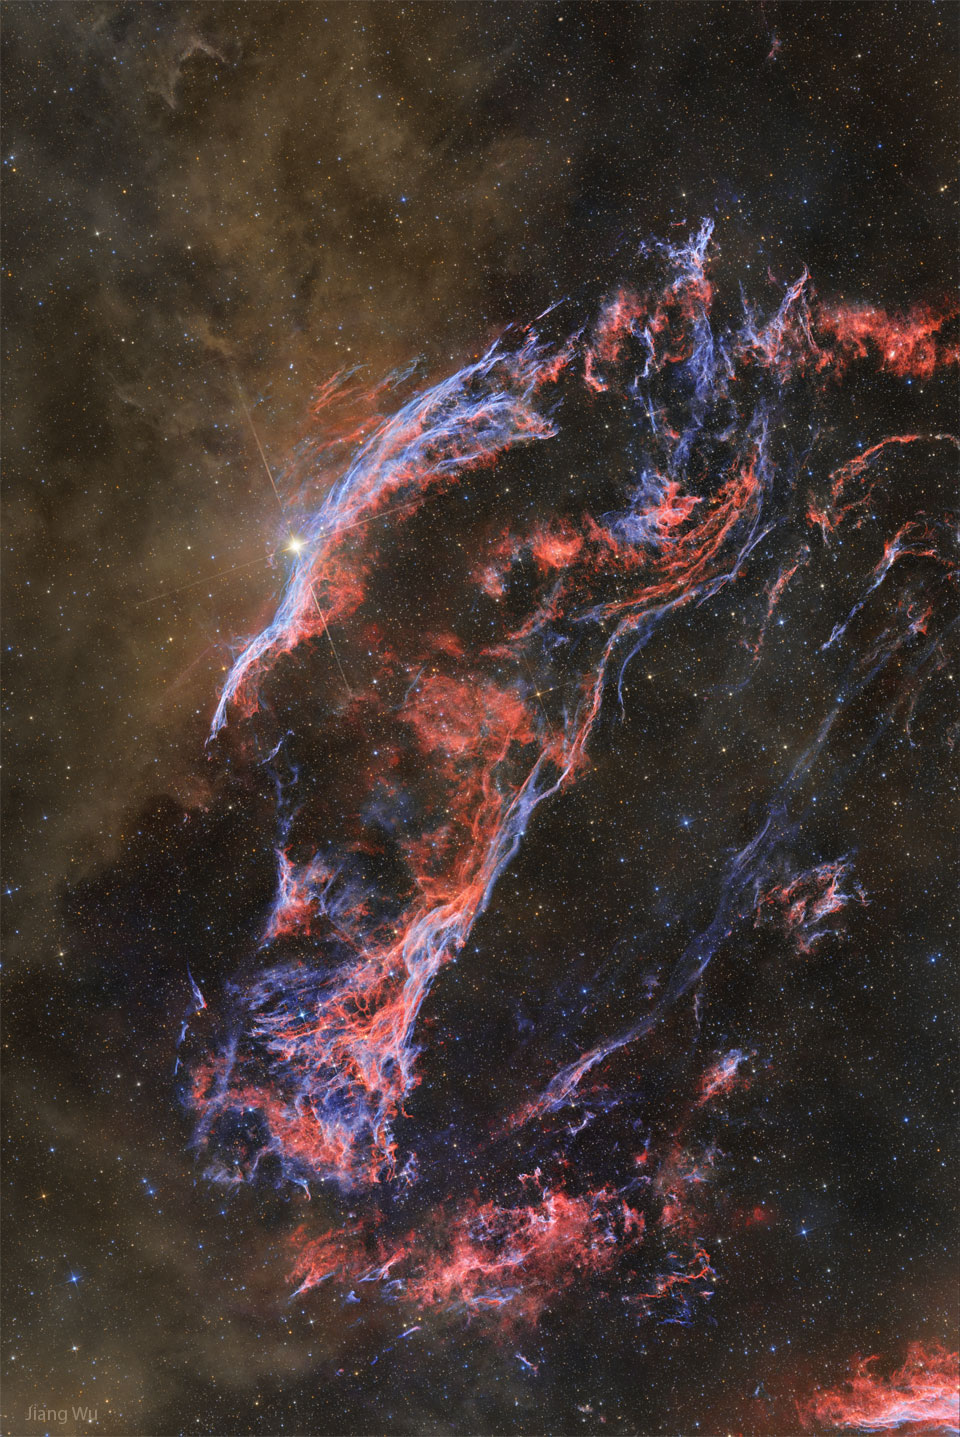 棕色发光的尘埃出现在蓝色和红色丝状气体的左侧，该气体构成了超新星遗迹面纱星云的西缘。有关更多详细信息，请参阅说明。